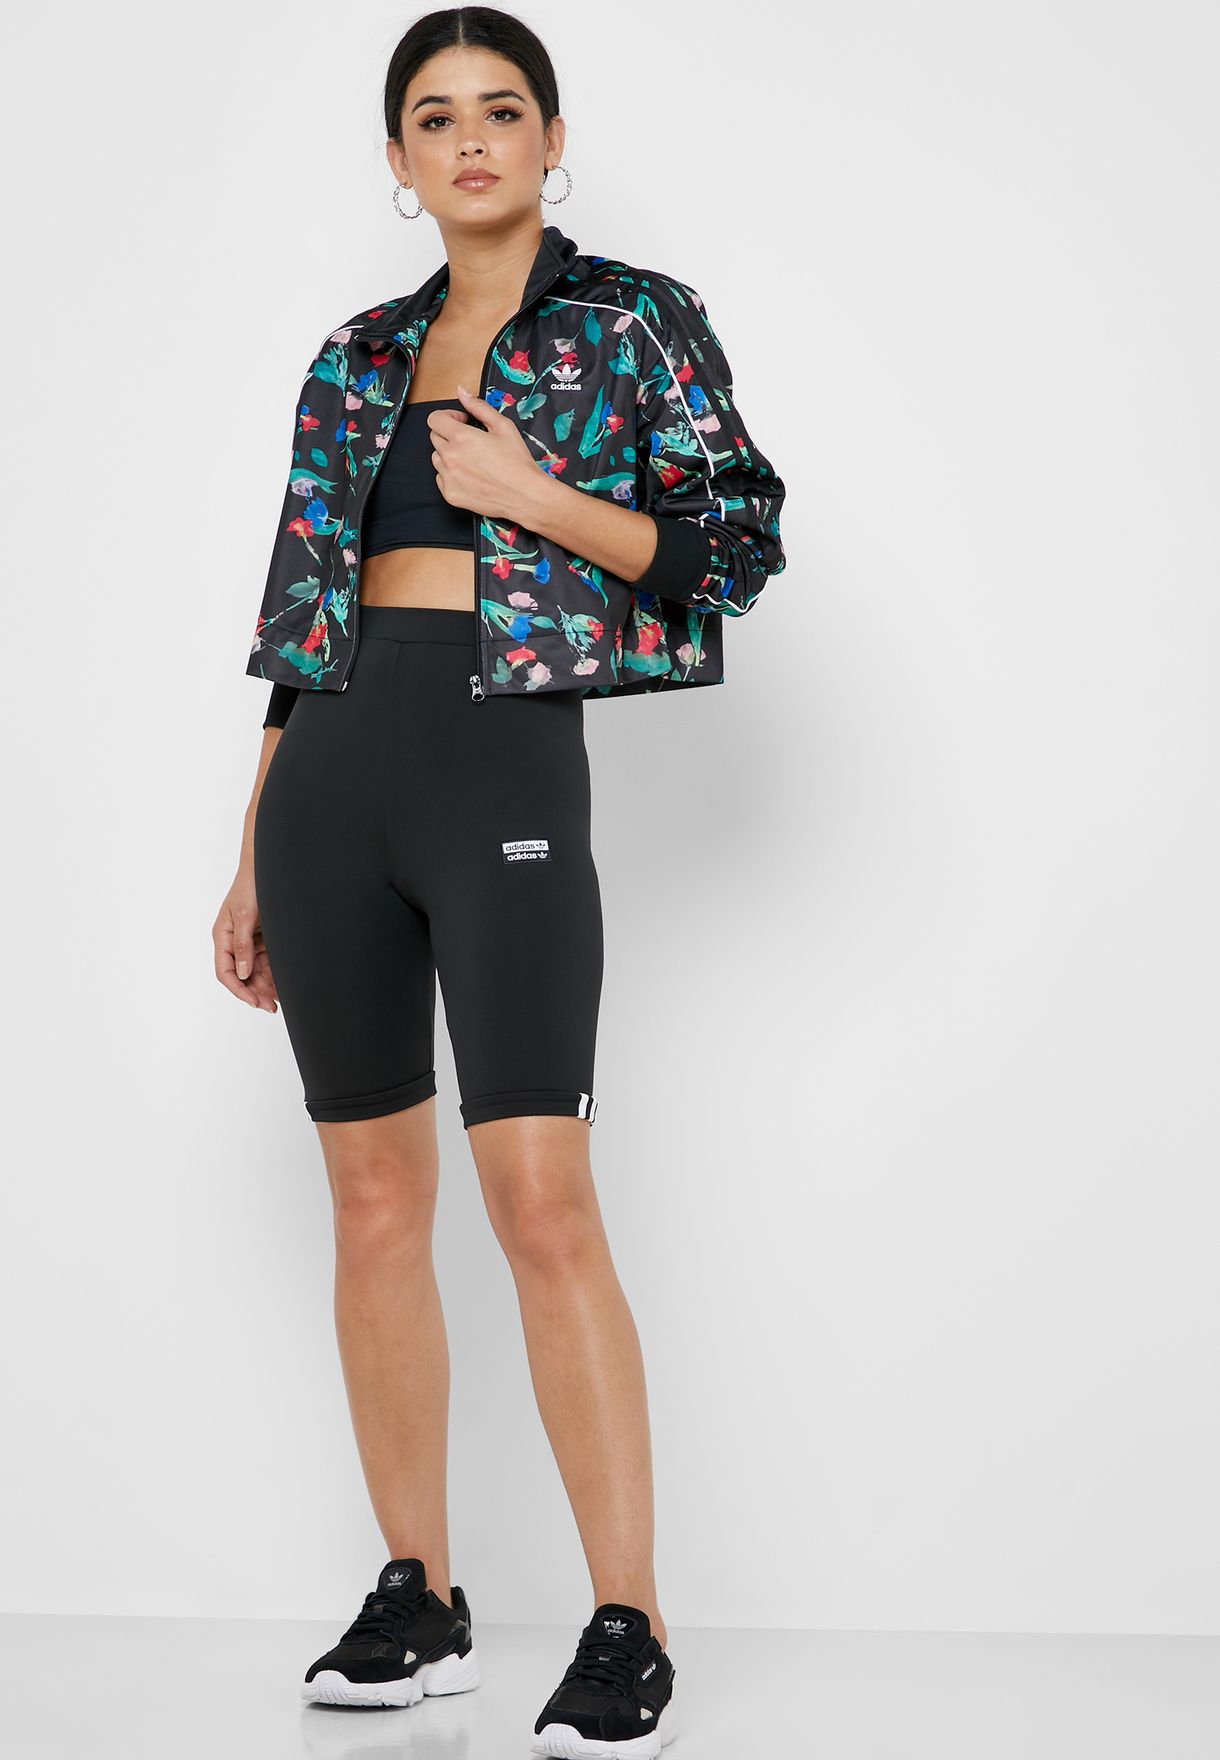 adidas floral jacket and shorts